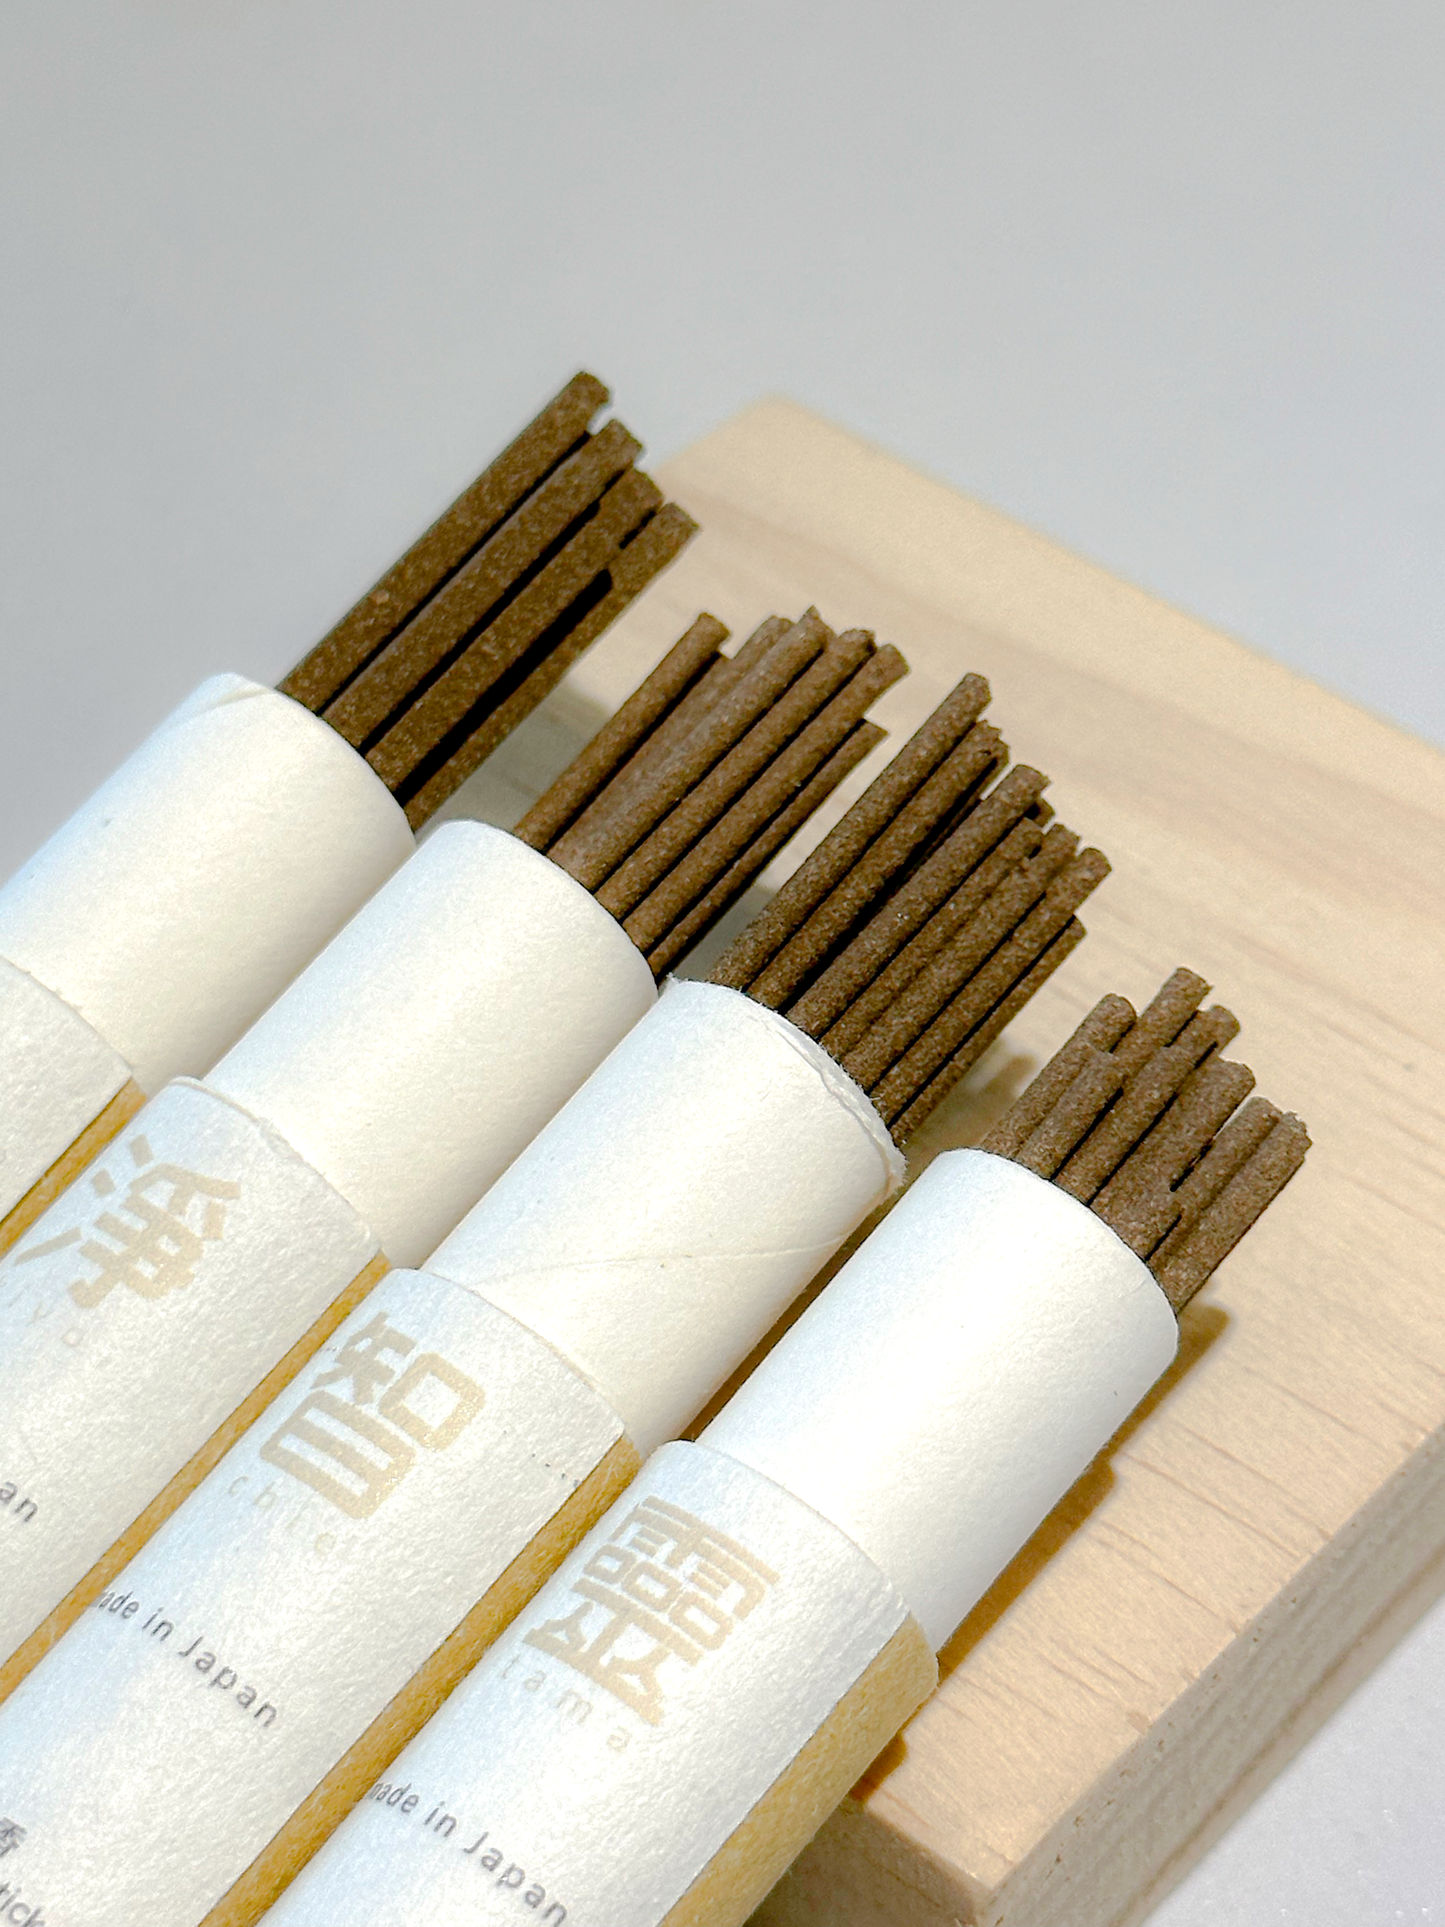 "Jing" Japan-made incense sticks